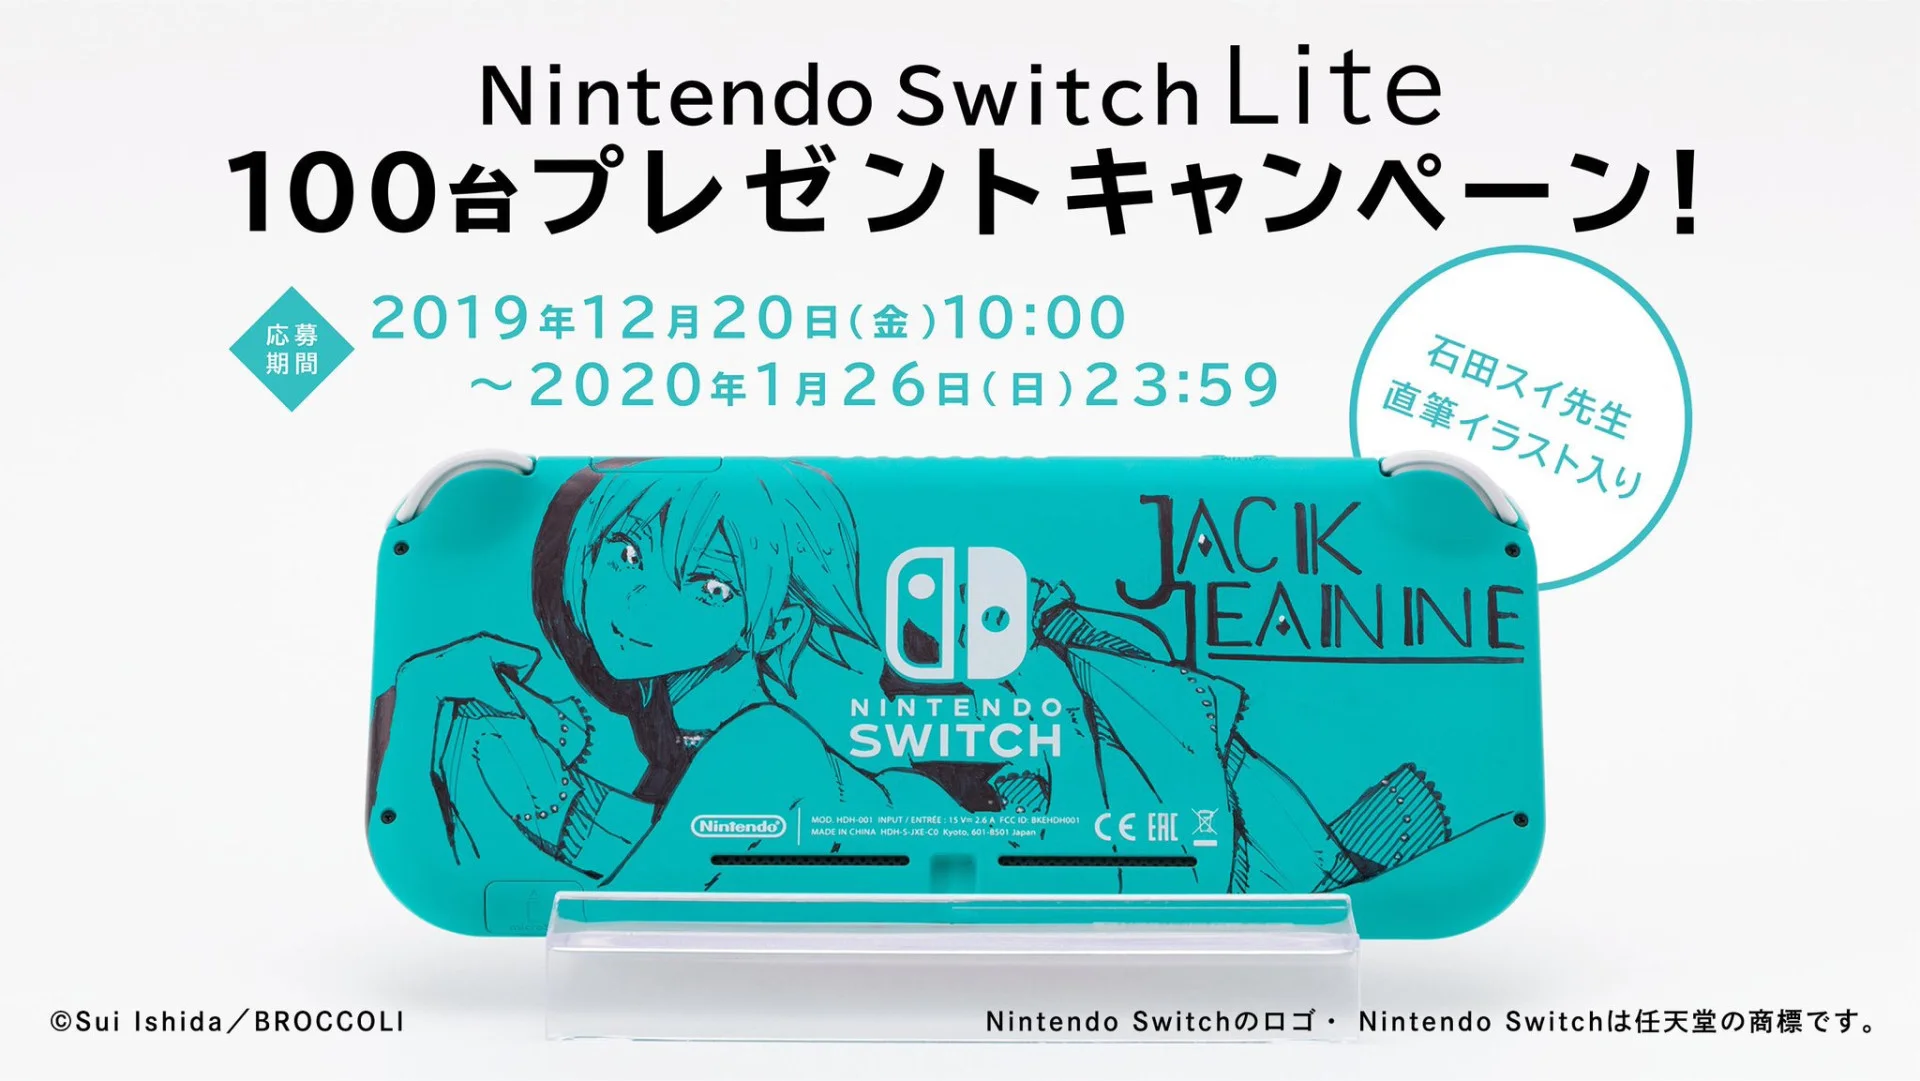 Nintendo Switch Lite Jack Jeanne Console